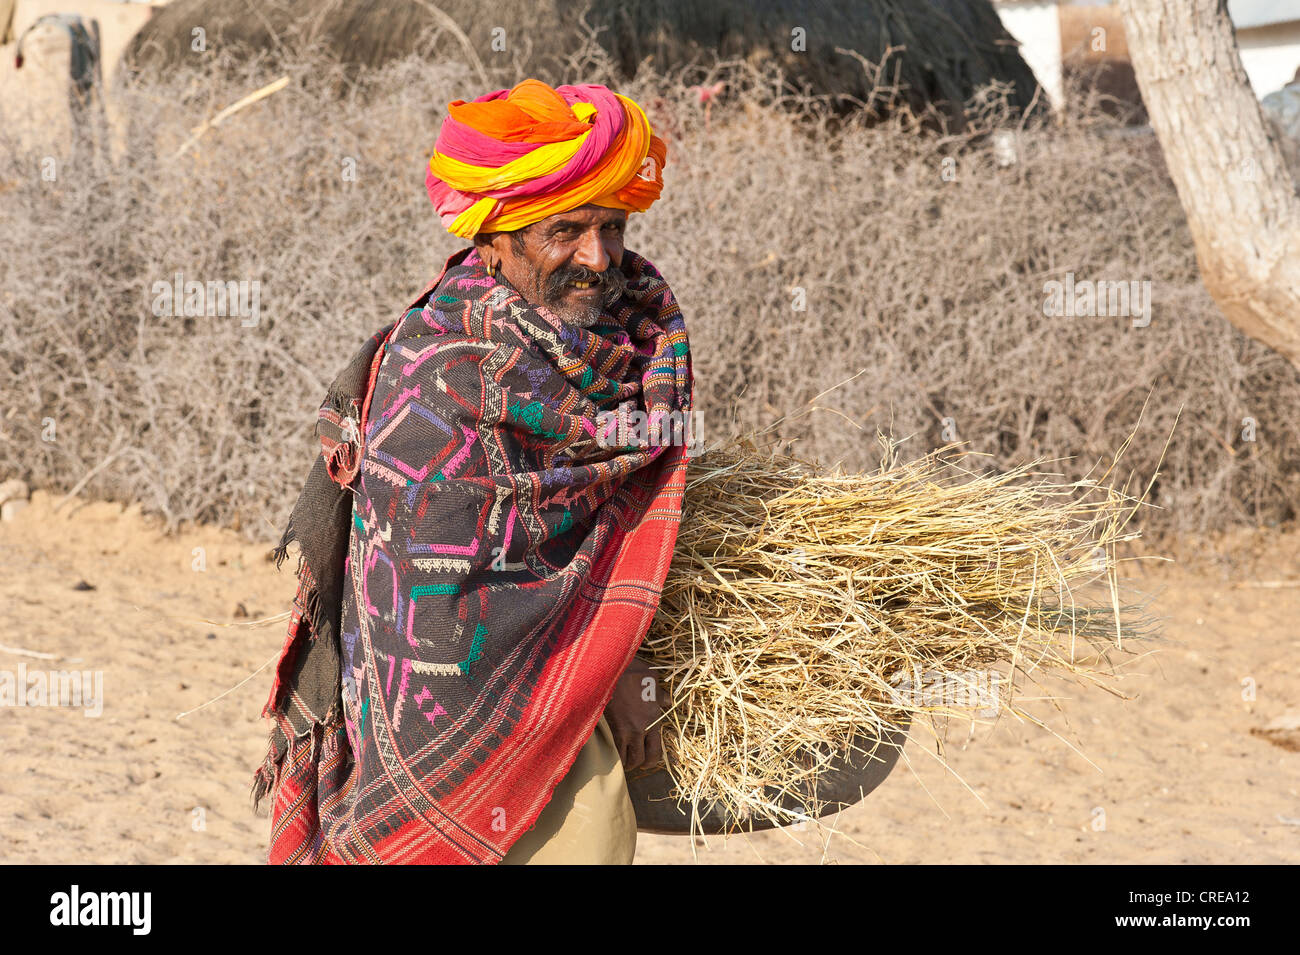 Alten indischen Mann mit bunten Turban eingehüllt in eine Decke, er trägt Stroh in einer Schüssel, Thar-Wüste, Rajasthan Stockfoto